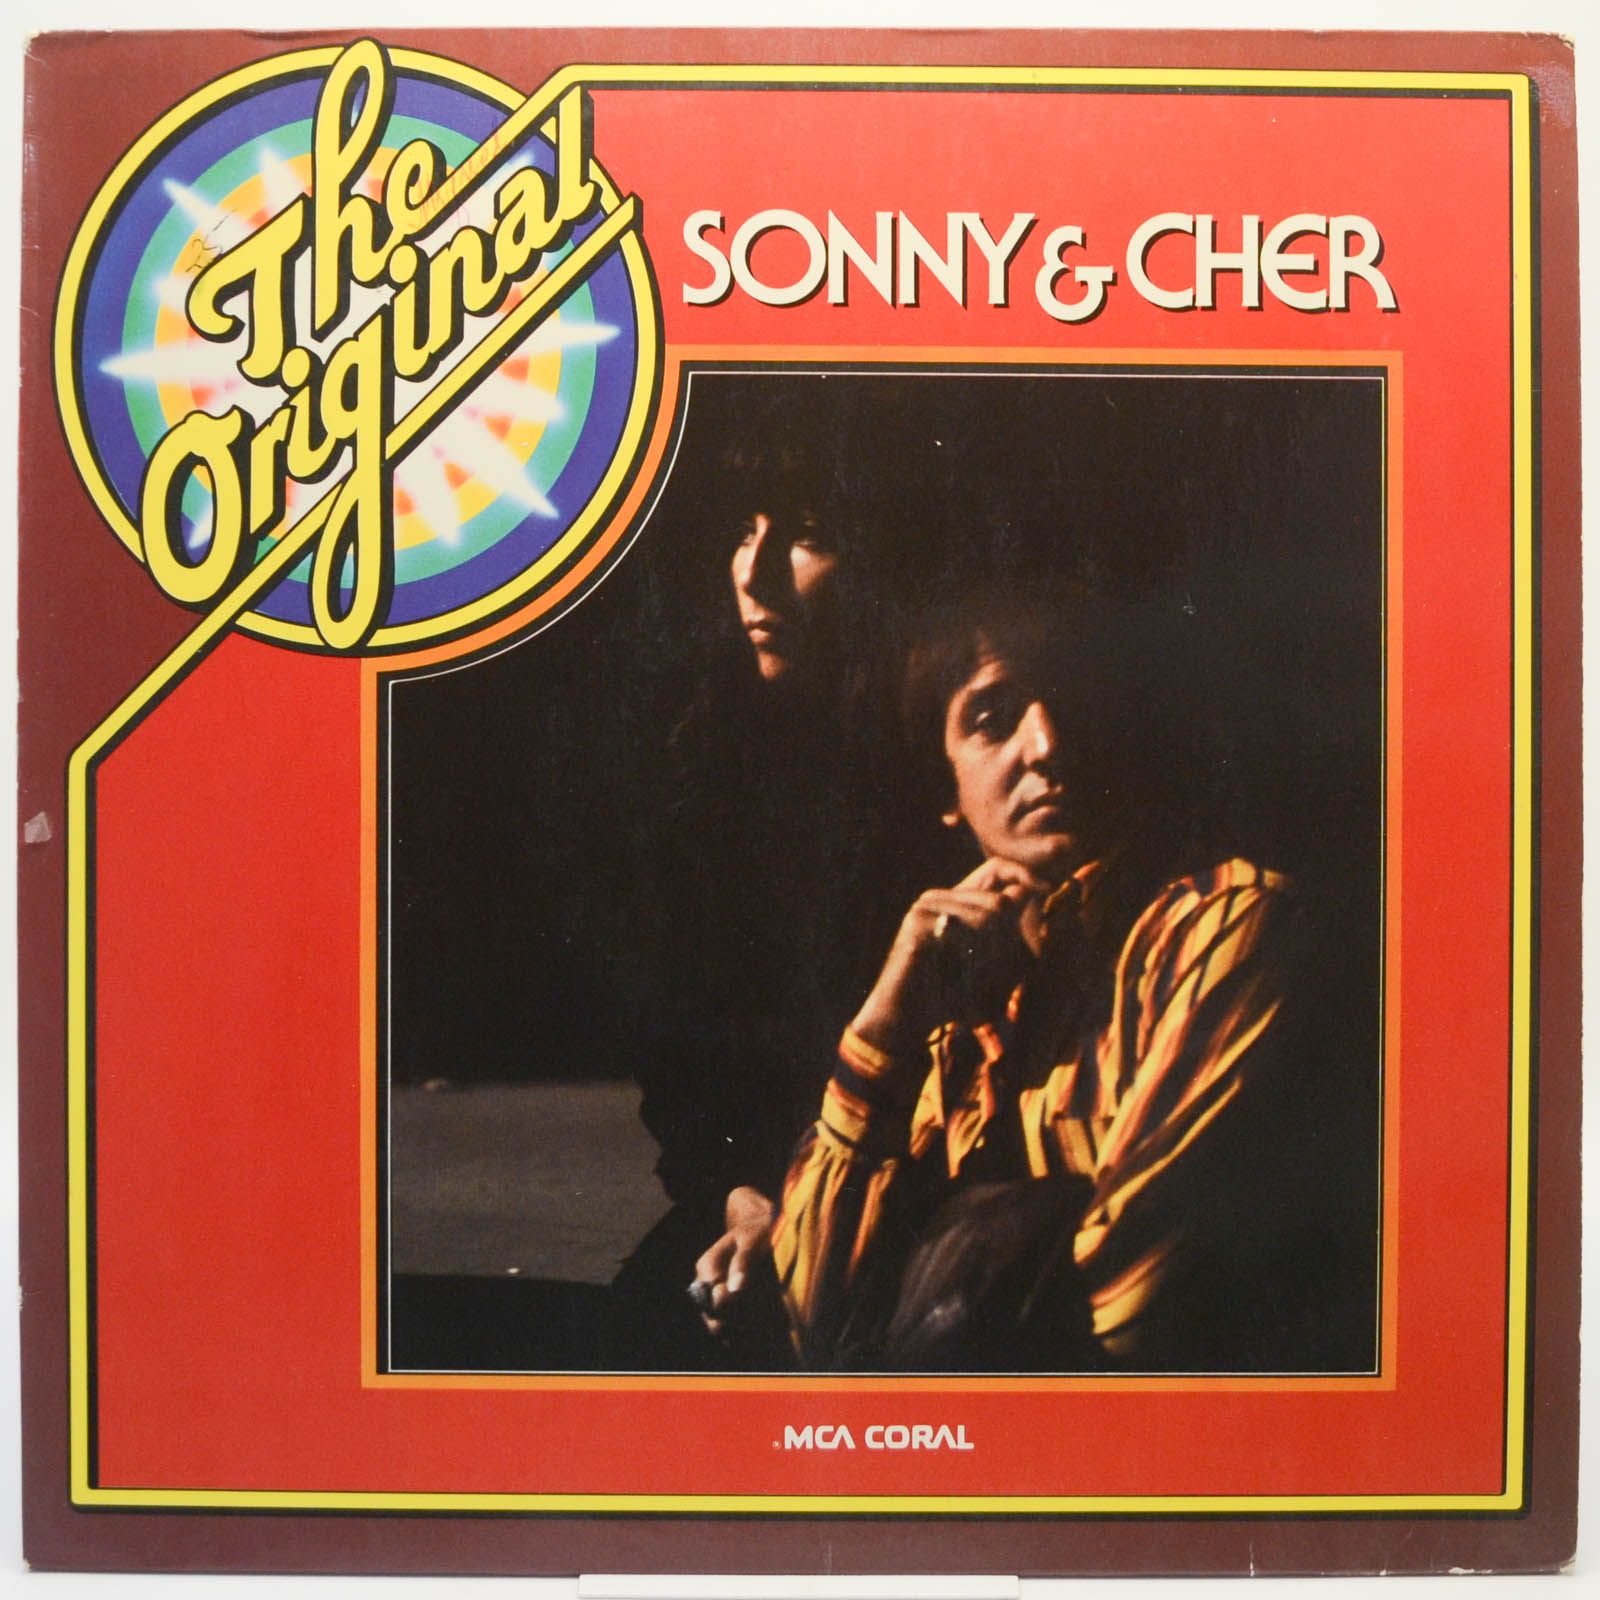 Sonny & Cher — The Original Sonny & Cher, 1977